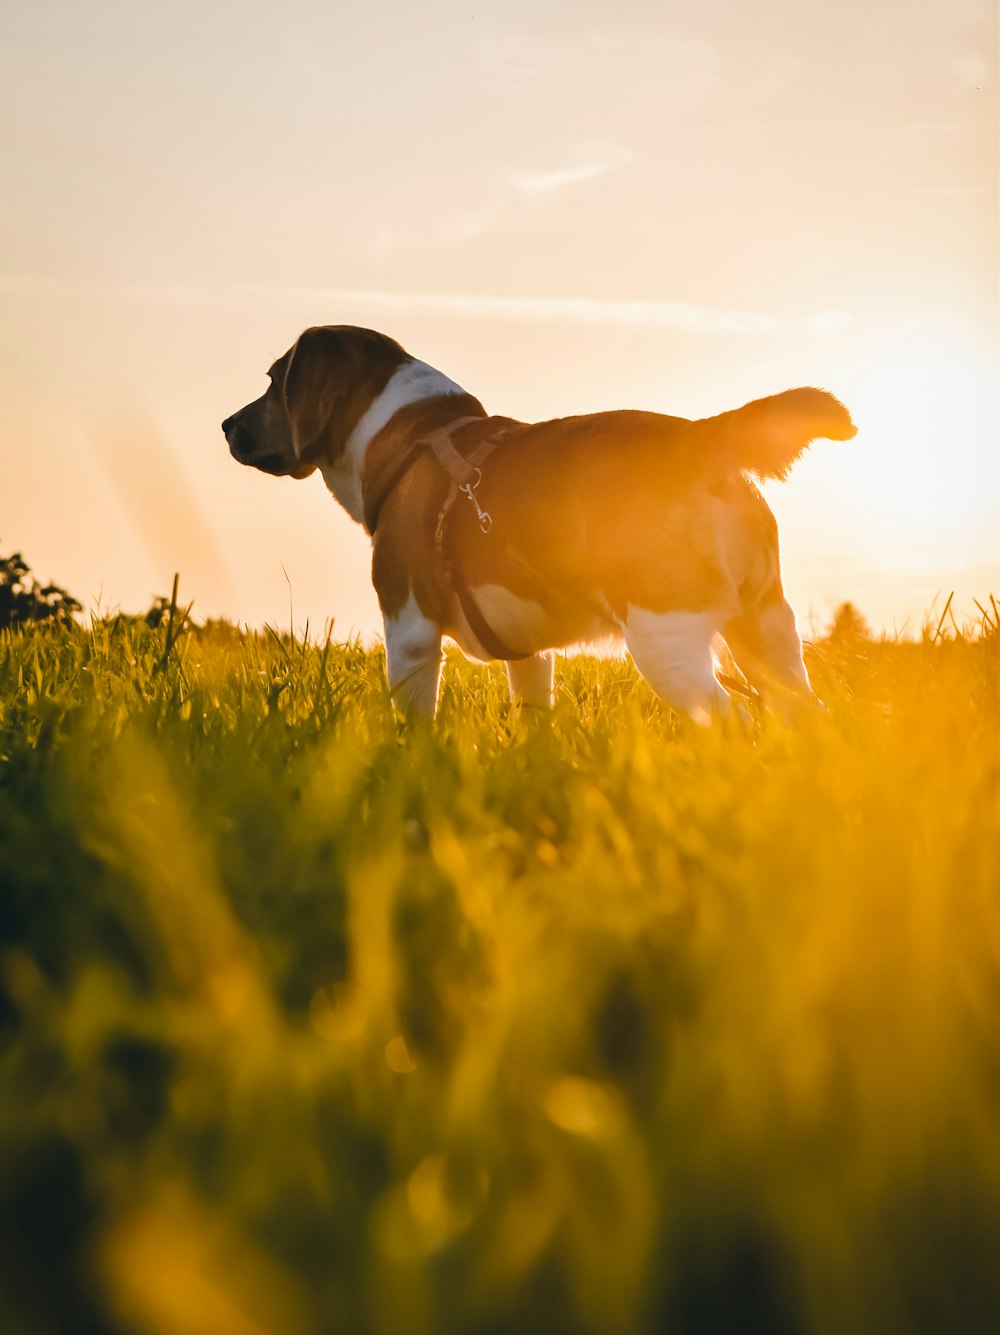 Brauner und weißer Hund mit kurzem Fell auf grünem Grasfeld während des Tages